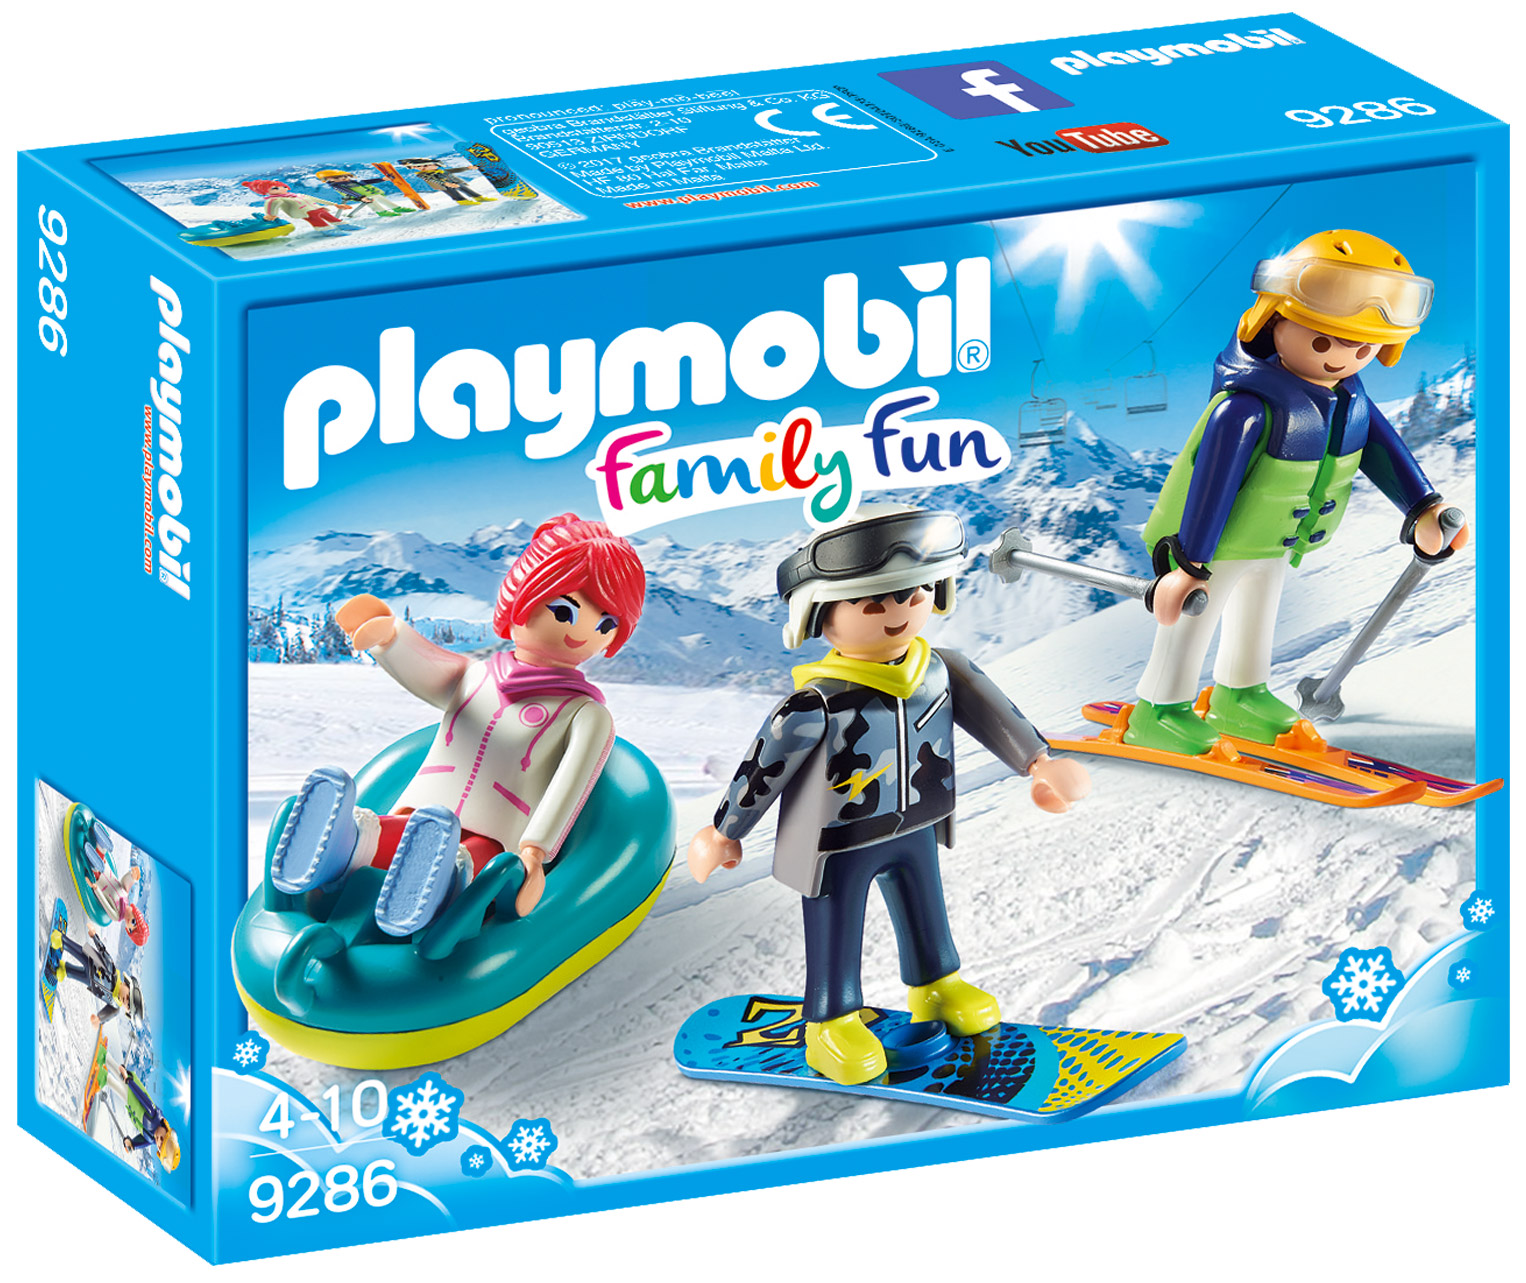 Playmobil Family Fun 9539 pas cher, Motel Playmobil